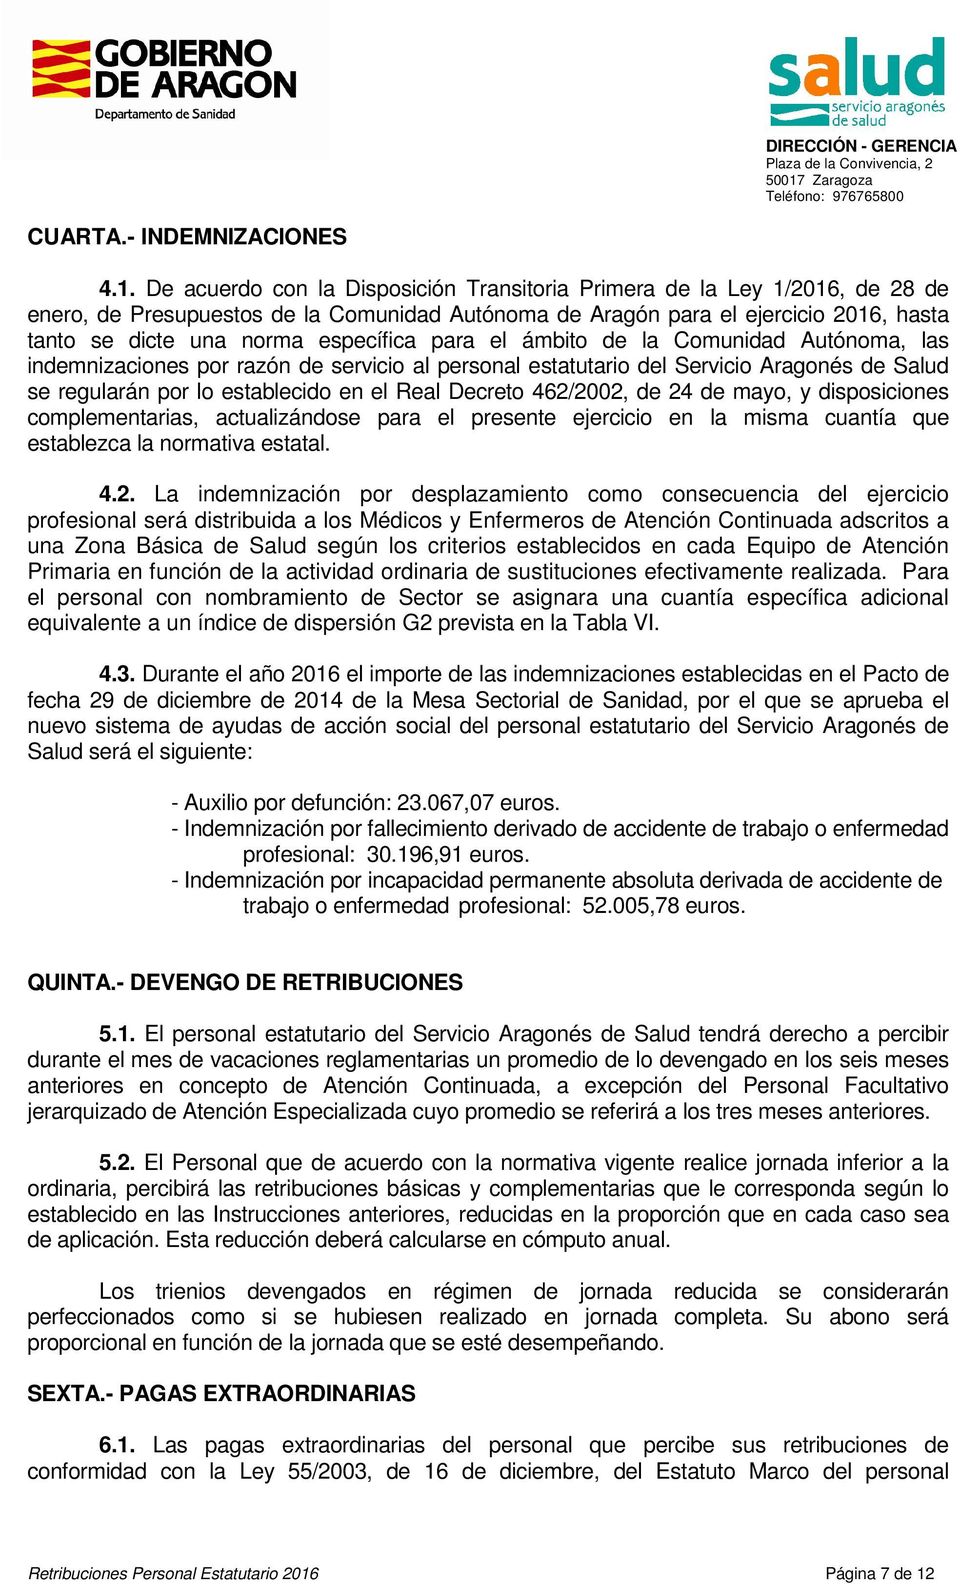 De acuerdo con la Disposición Transitoria Primera de la Ley 1/2016, de 28 de enero, de Presupuestos de la Comunidad Autónoma de Aragón para el ejercicio 2016, hasta tanto se dicte una norma